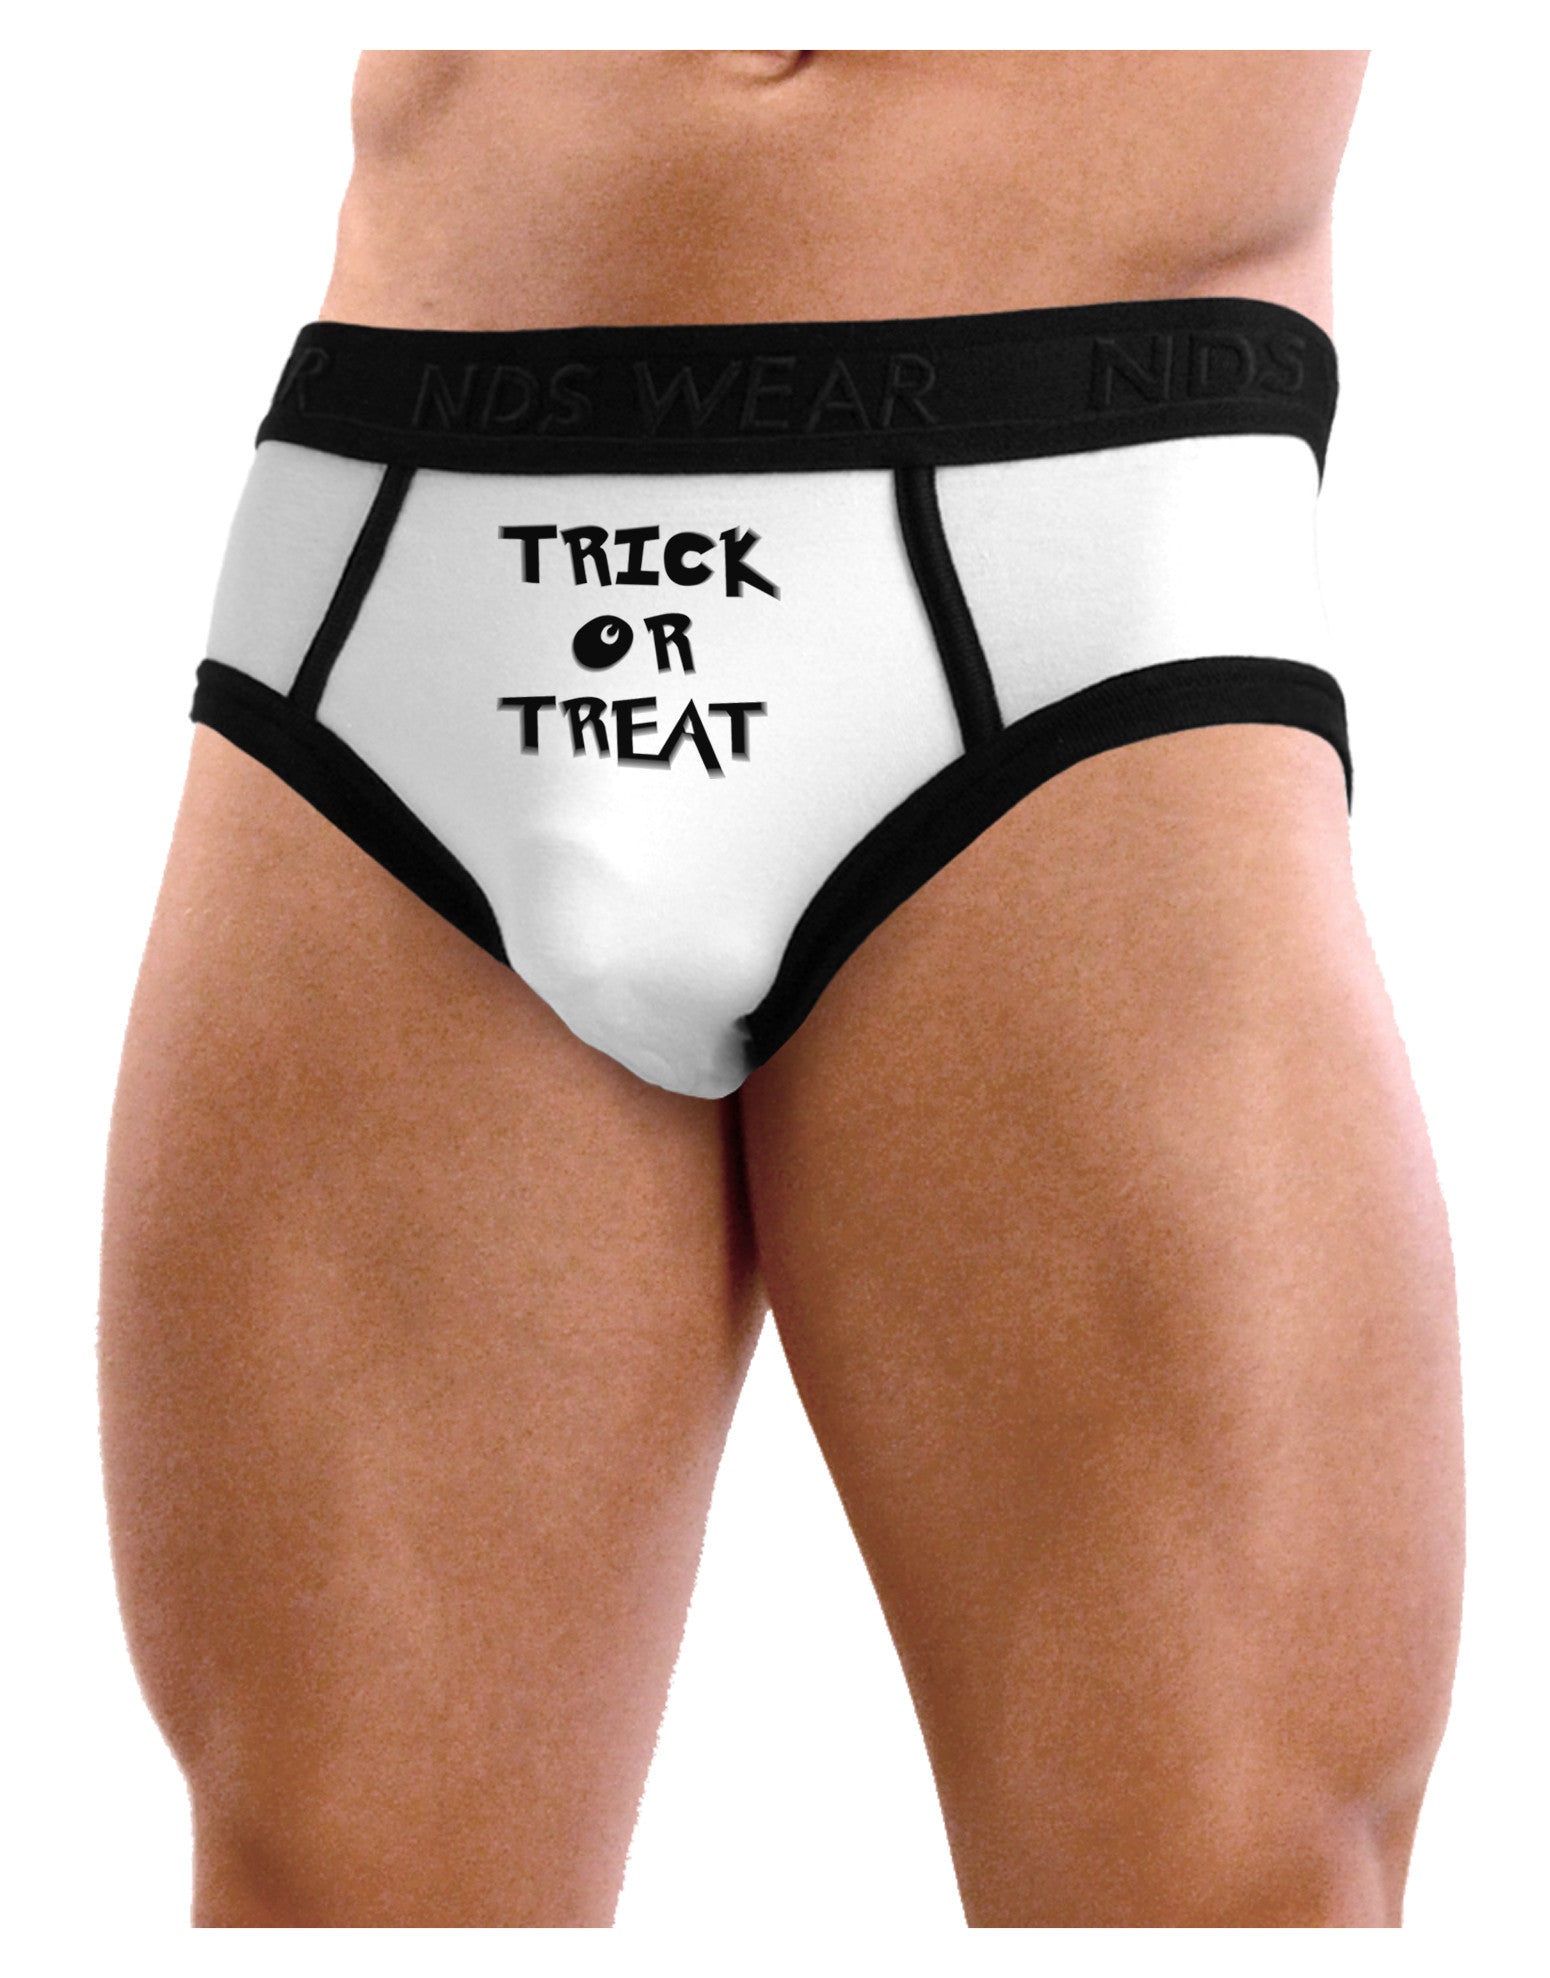 Trick or Treat Halloween Pumpkin Mens NDS Wear Briefs Underwear